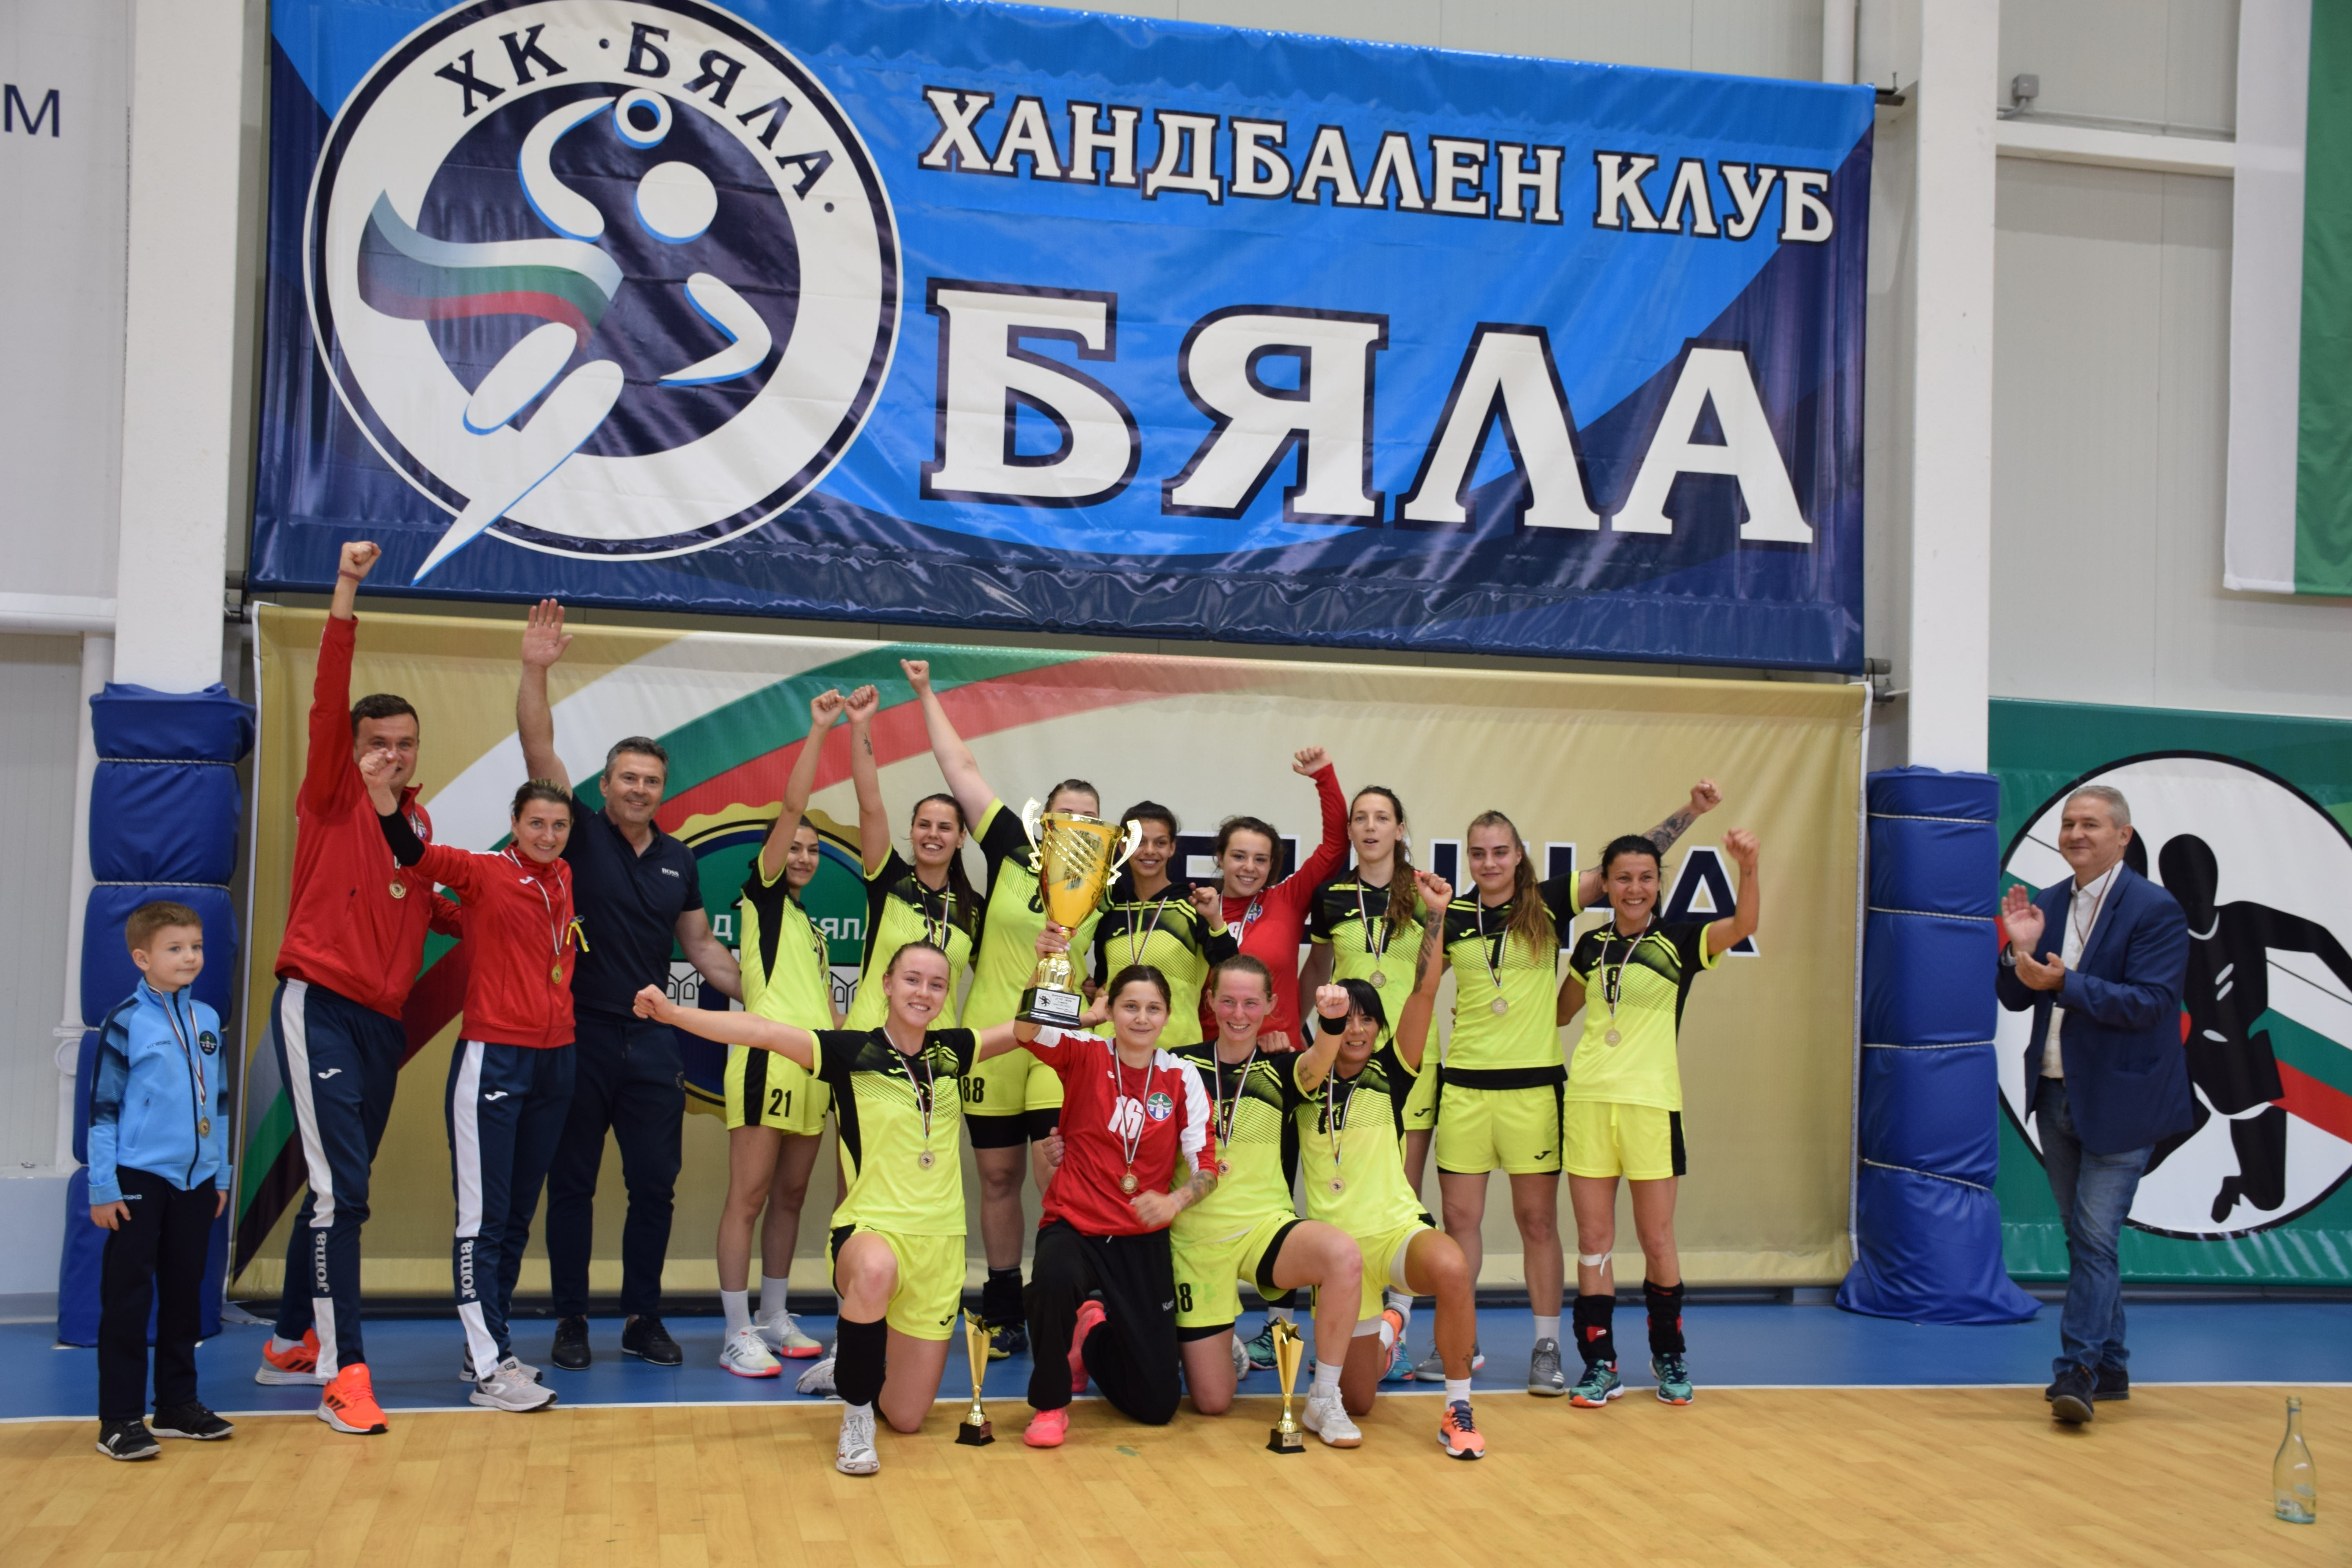 Бяла е новият шампион на България по хандбал при жените след надмощие над Свиленград
